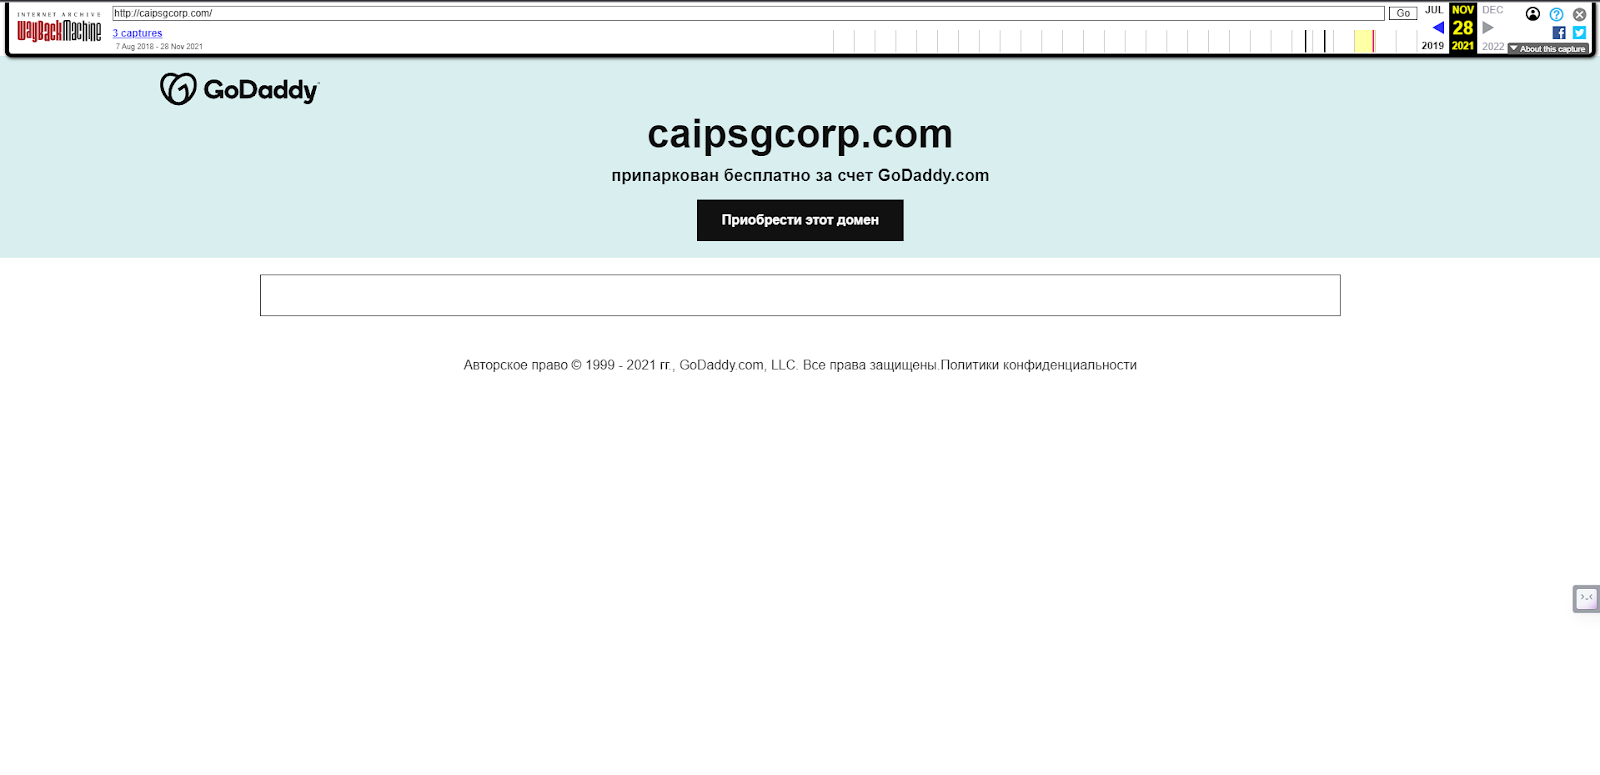 Caip SG Corp дата регистрации